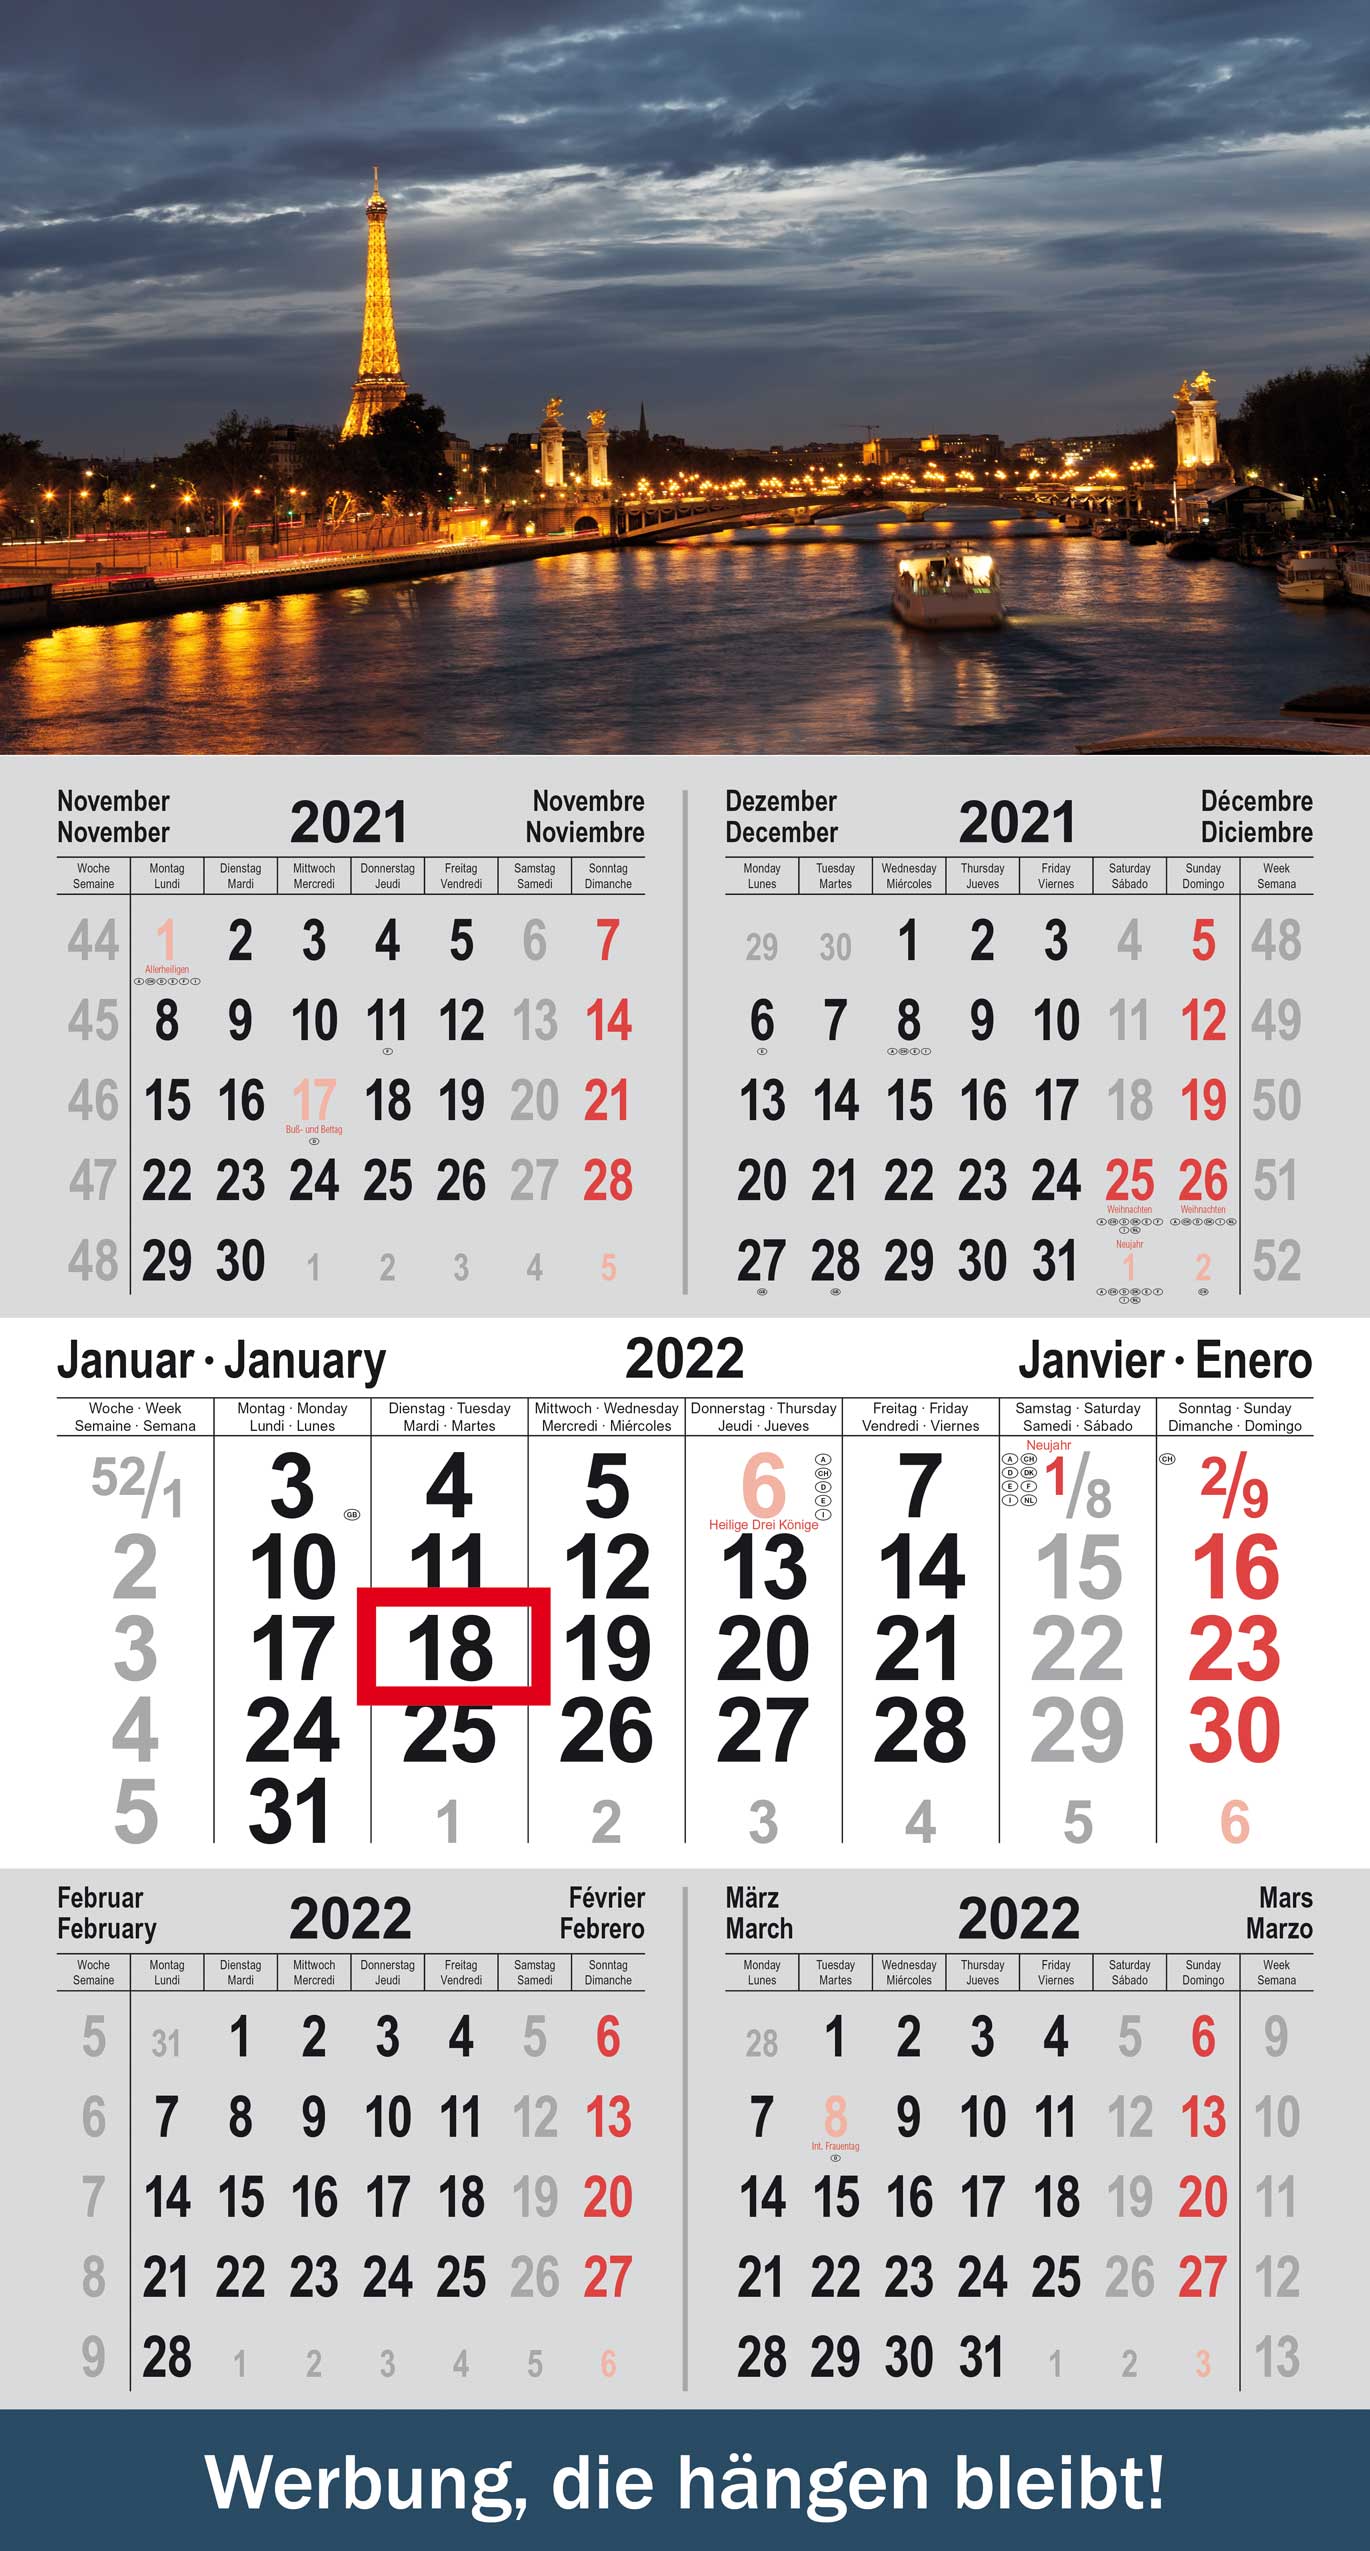 5-month calendar small